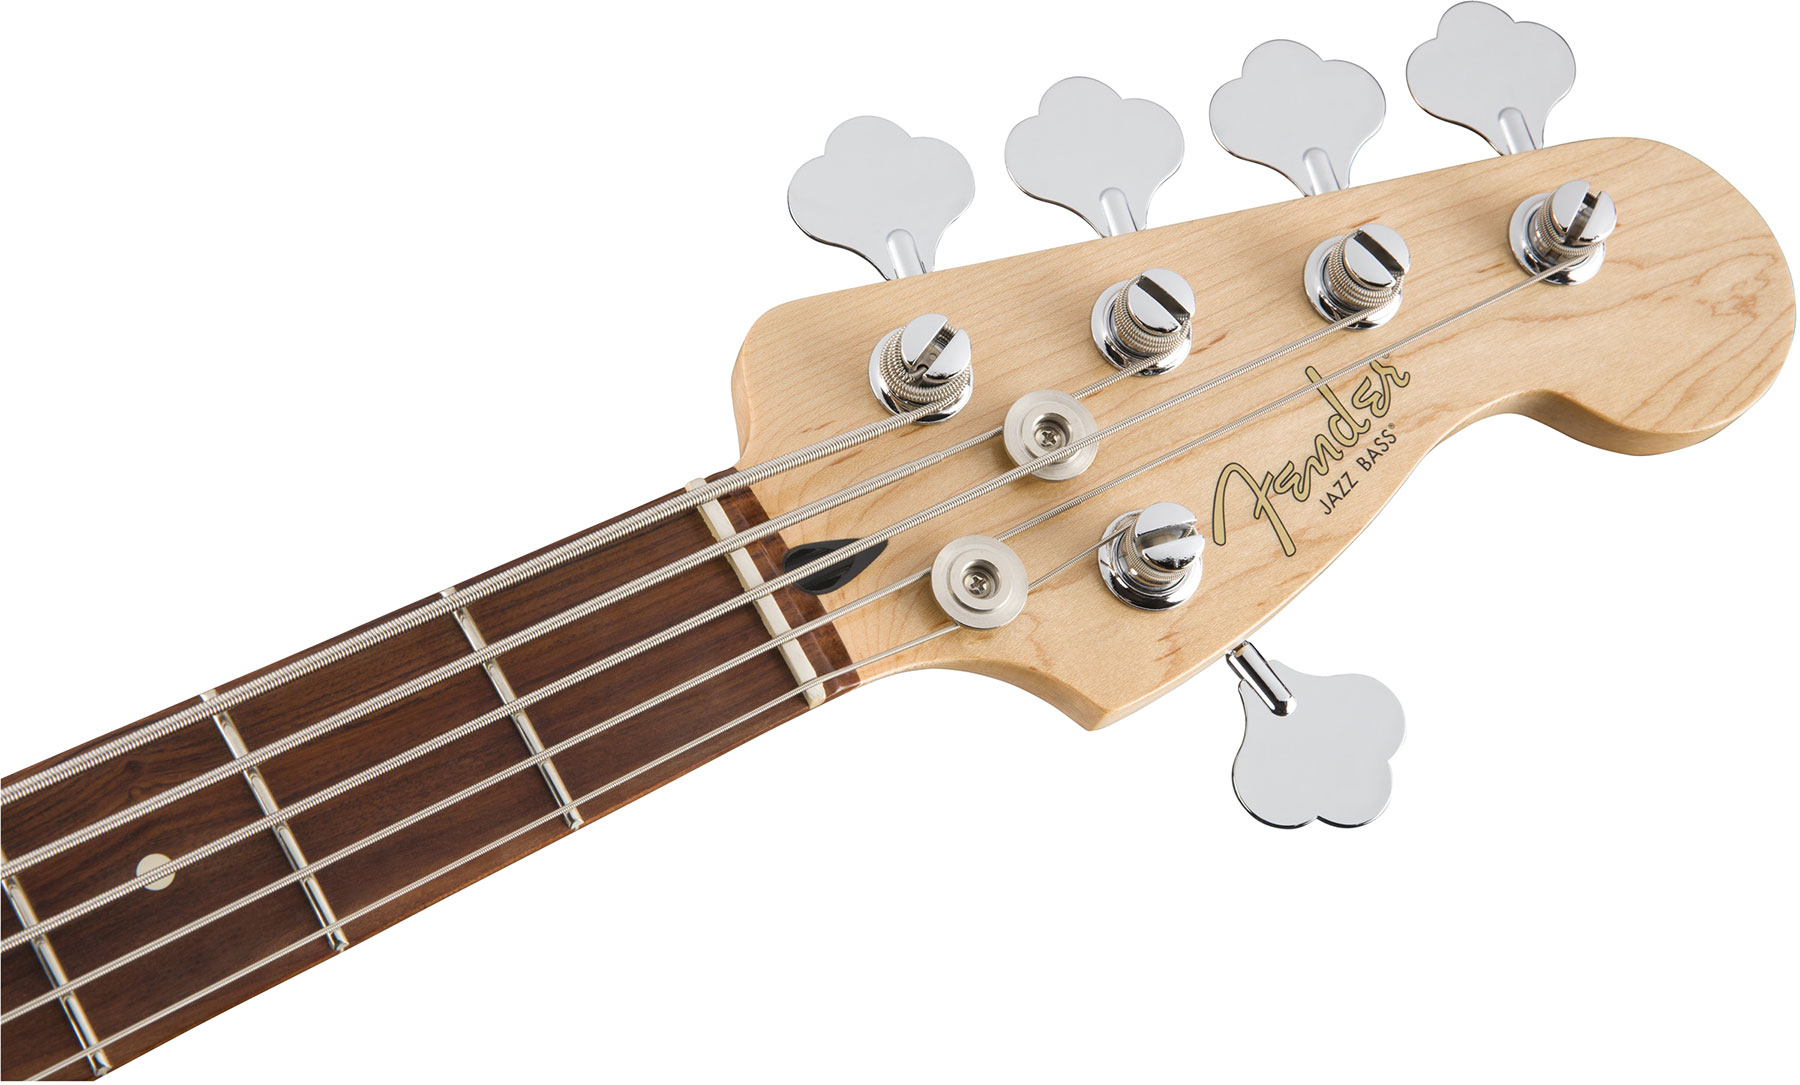 Fender Jazz Bass Player V 5-cordes Mex Pf - 3-color Sunburst - Bajo eléctrico de cuerpo sólido - Variation 3